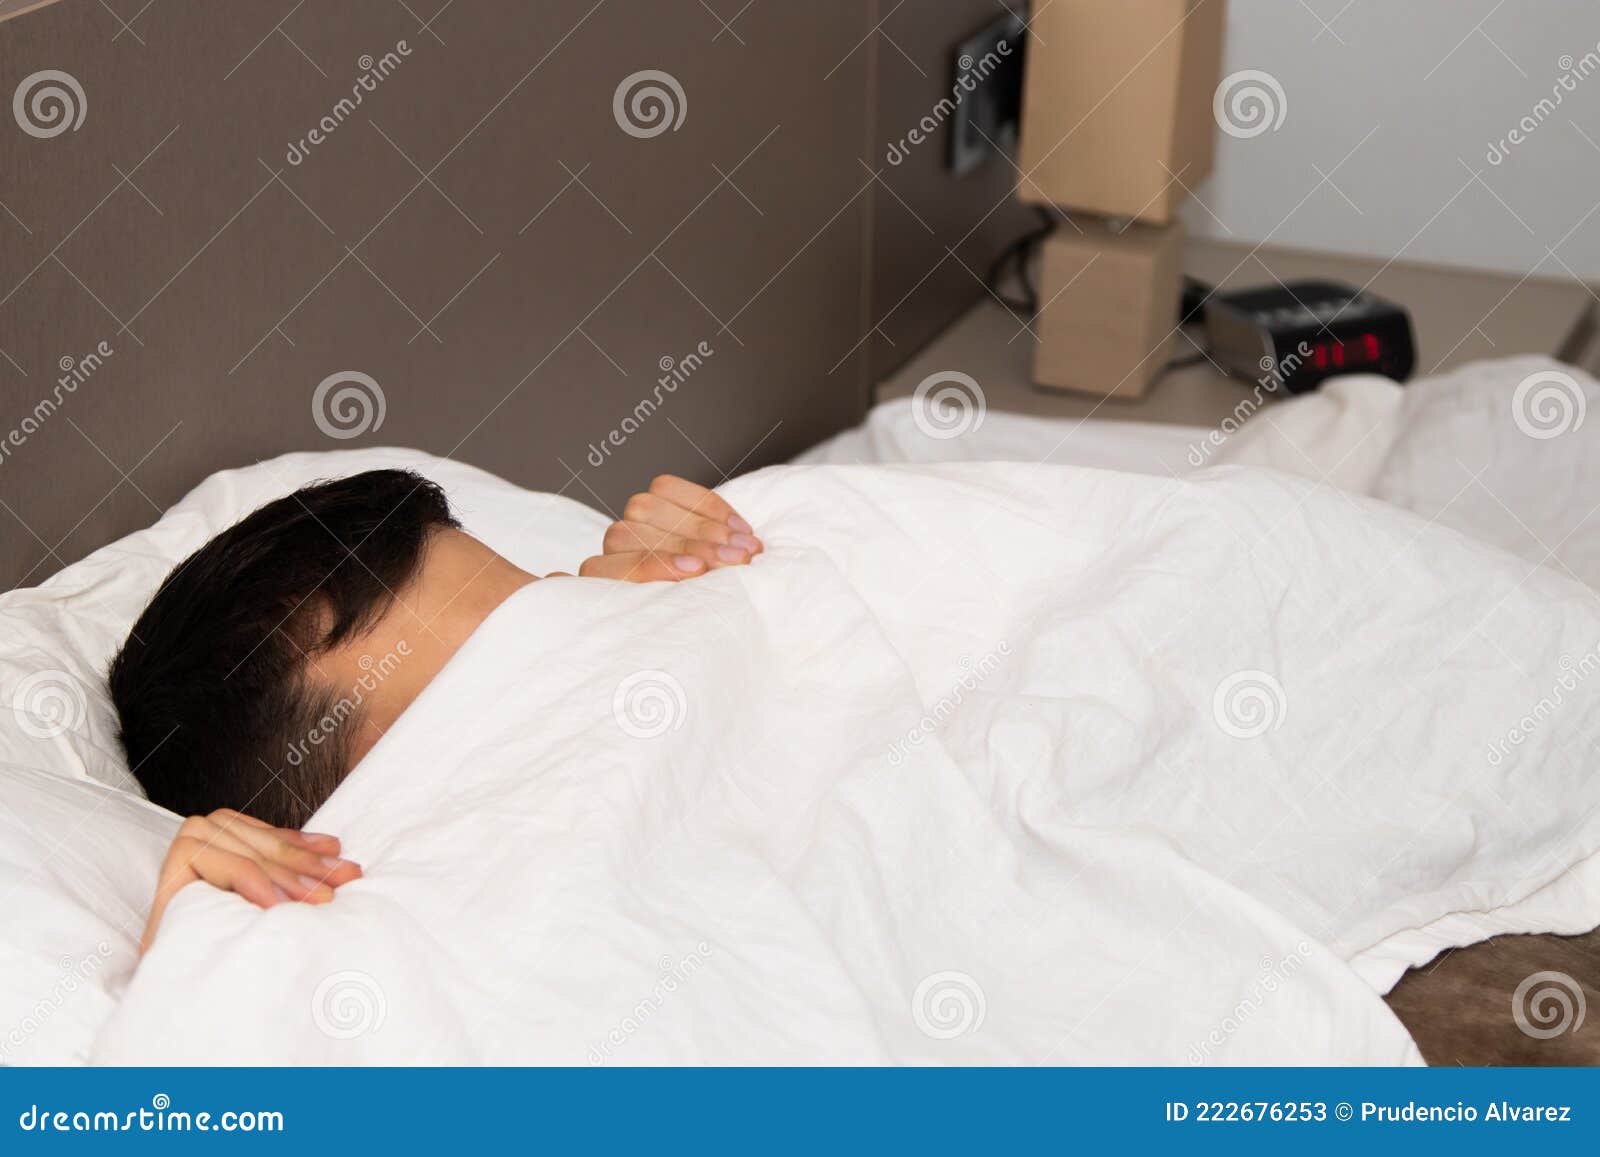 男人睡觉素材-男人睡觉图片-男人睡觉素材图片下载-觅知网